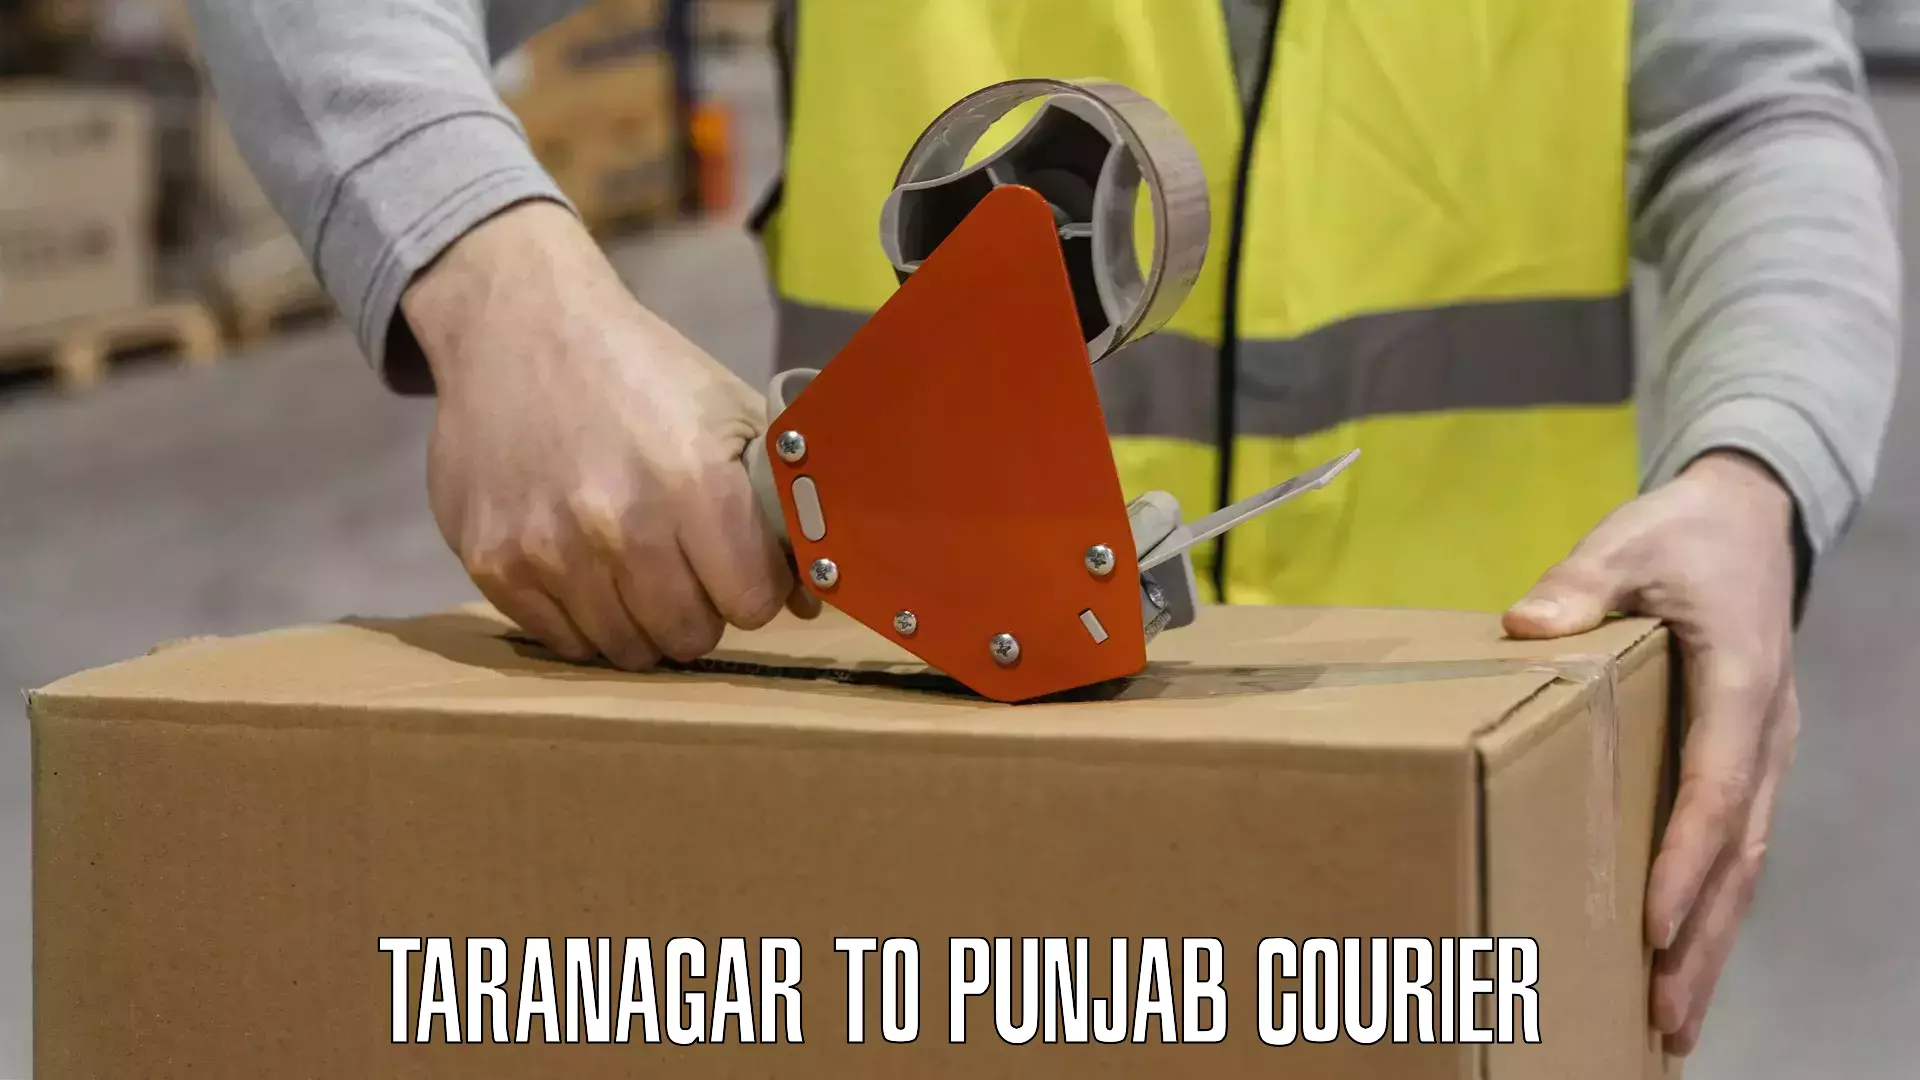 Efficient courier operations Taranagar to Faridkot